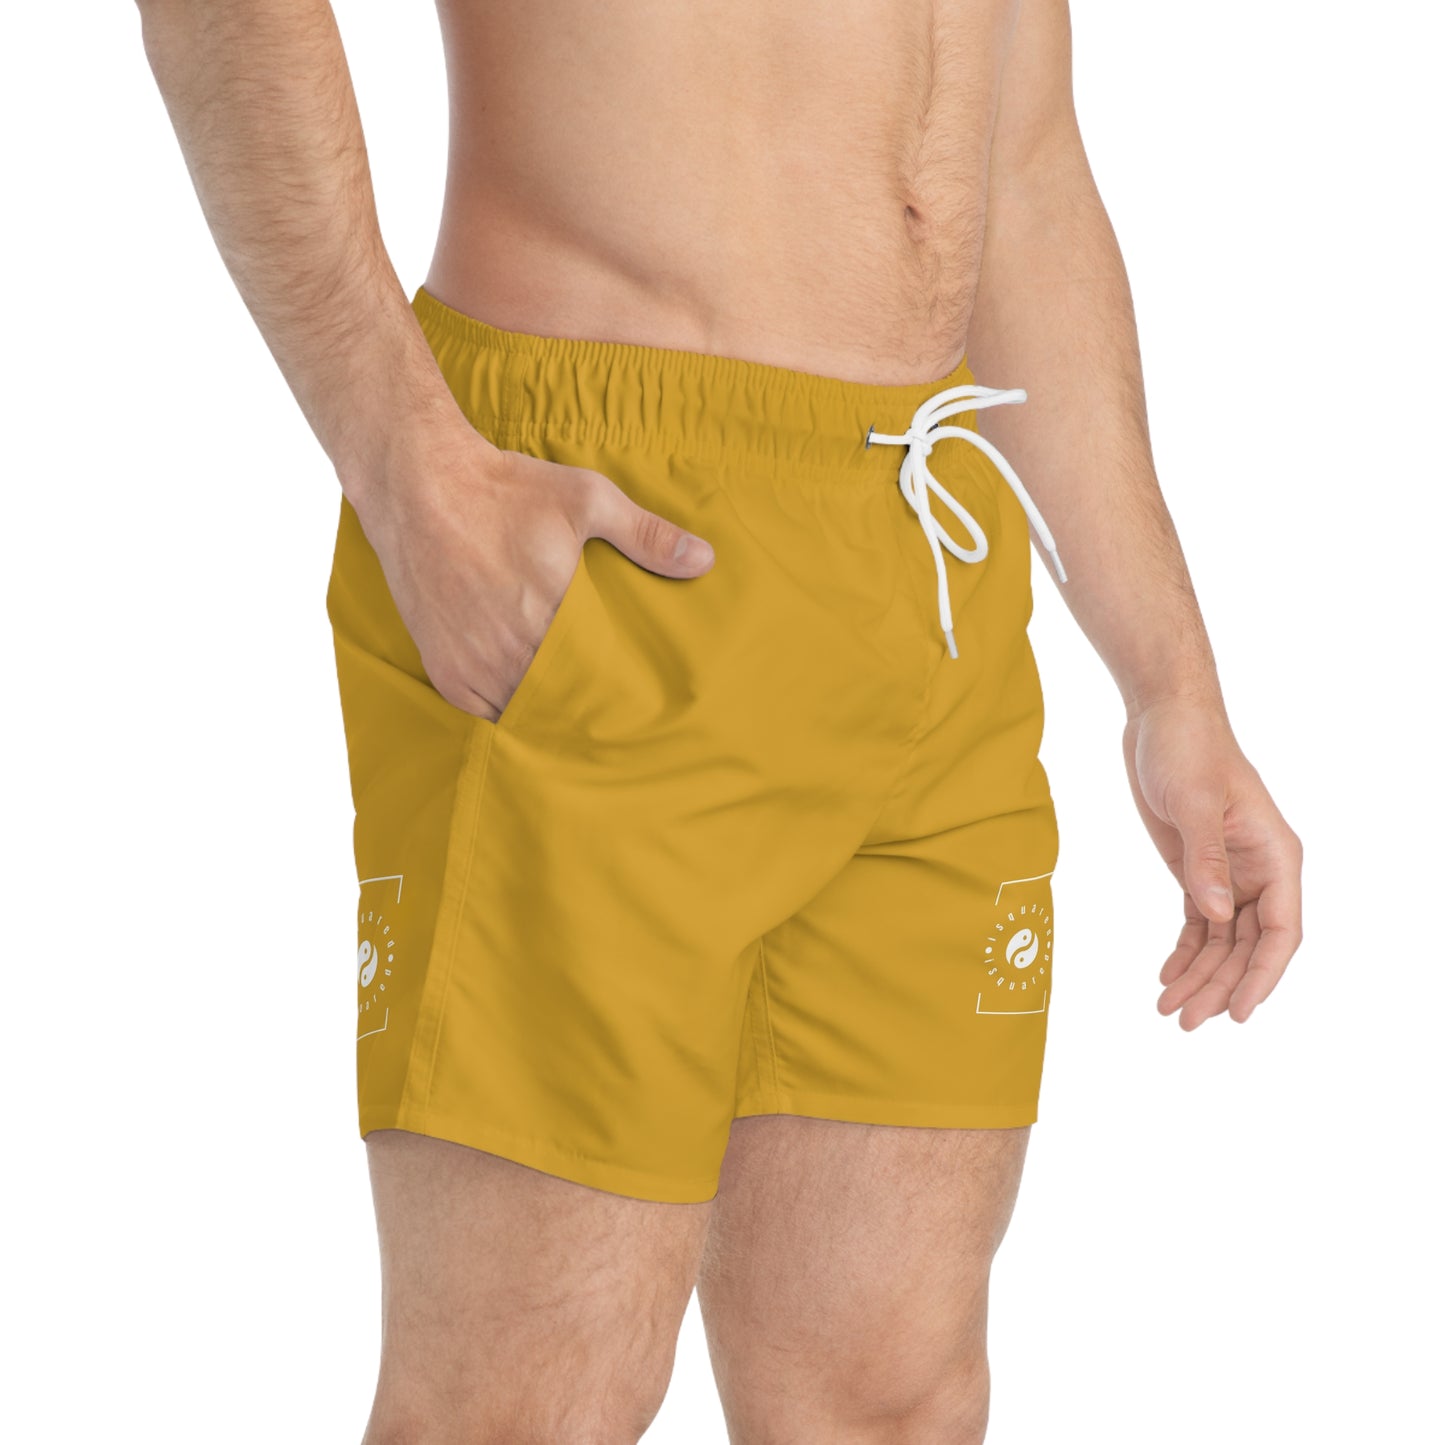 DAA520 Goldenrod - Swim Trunks for Men